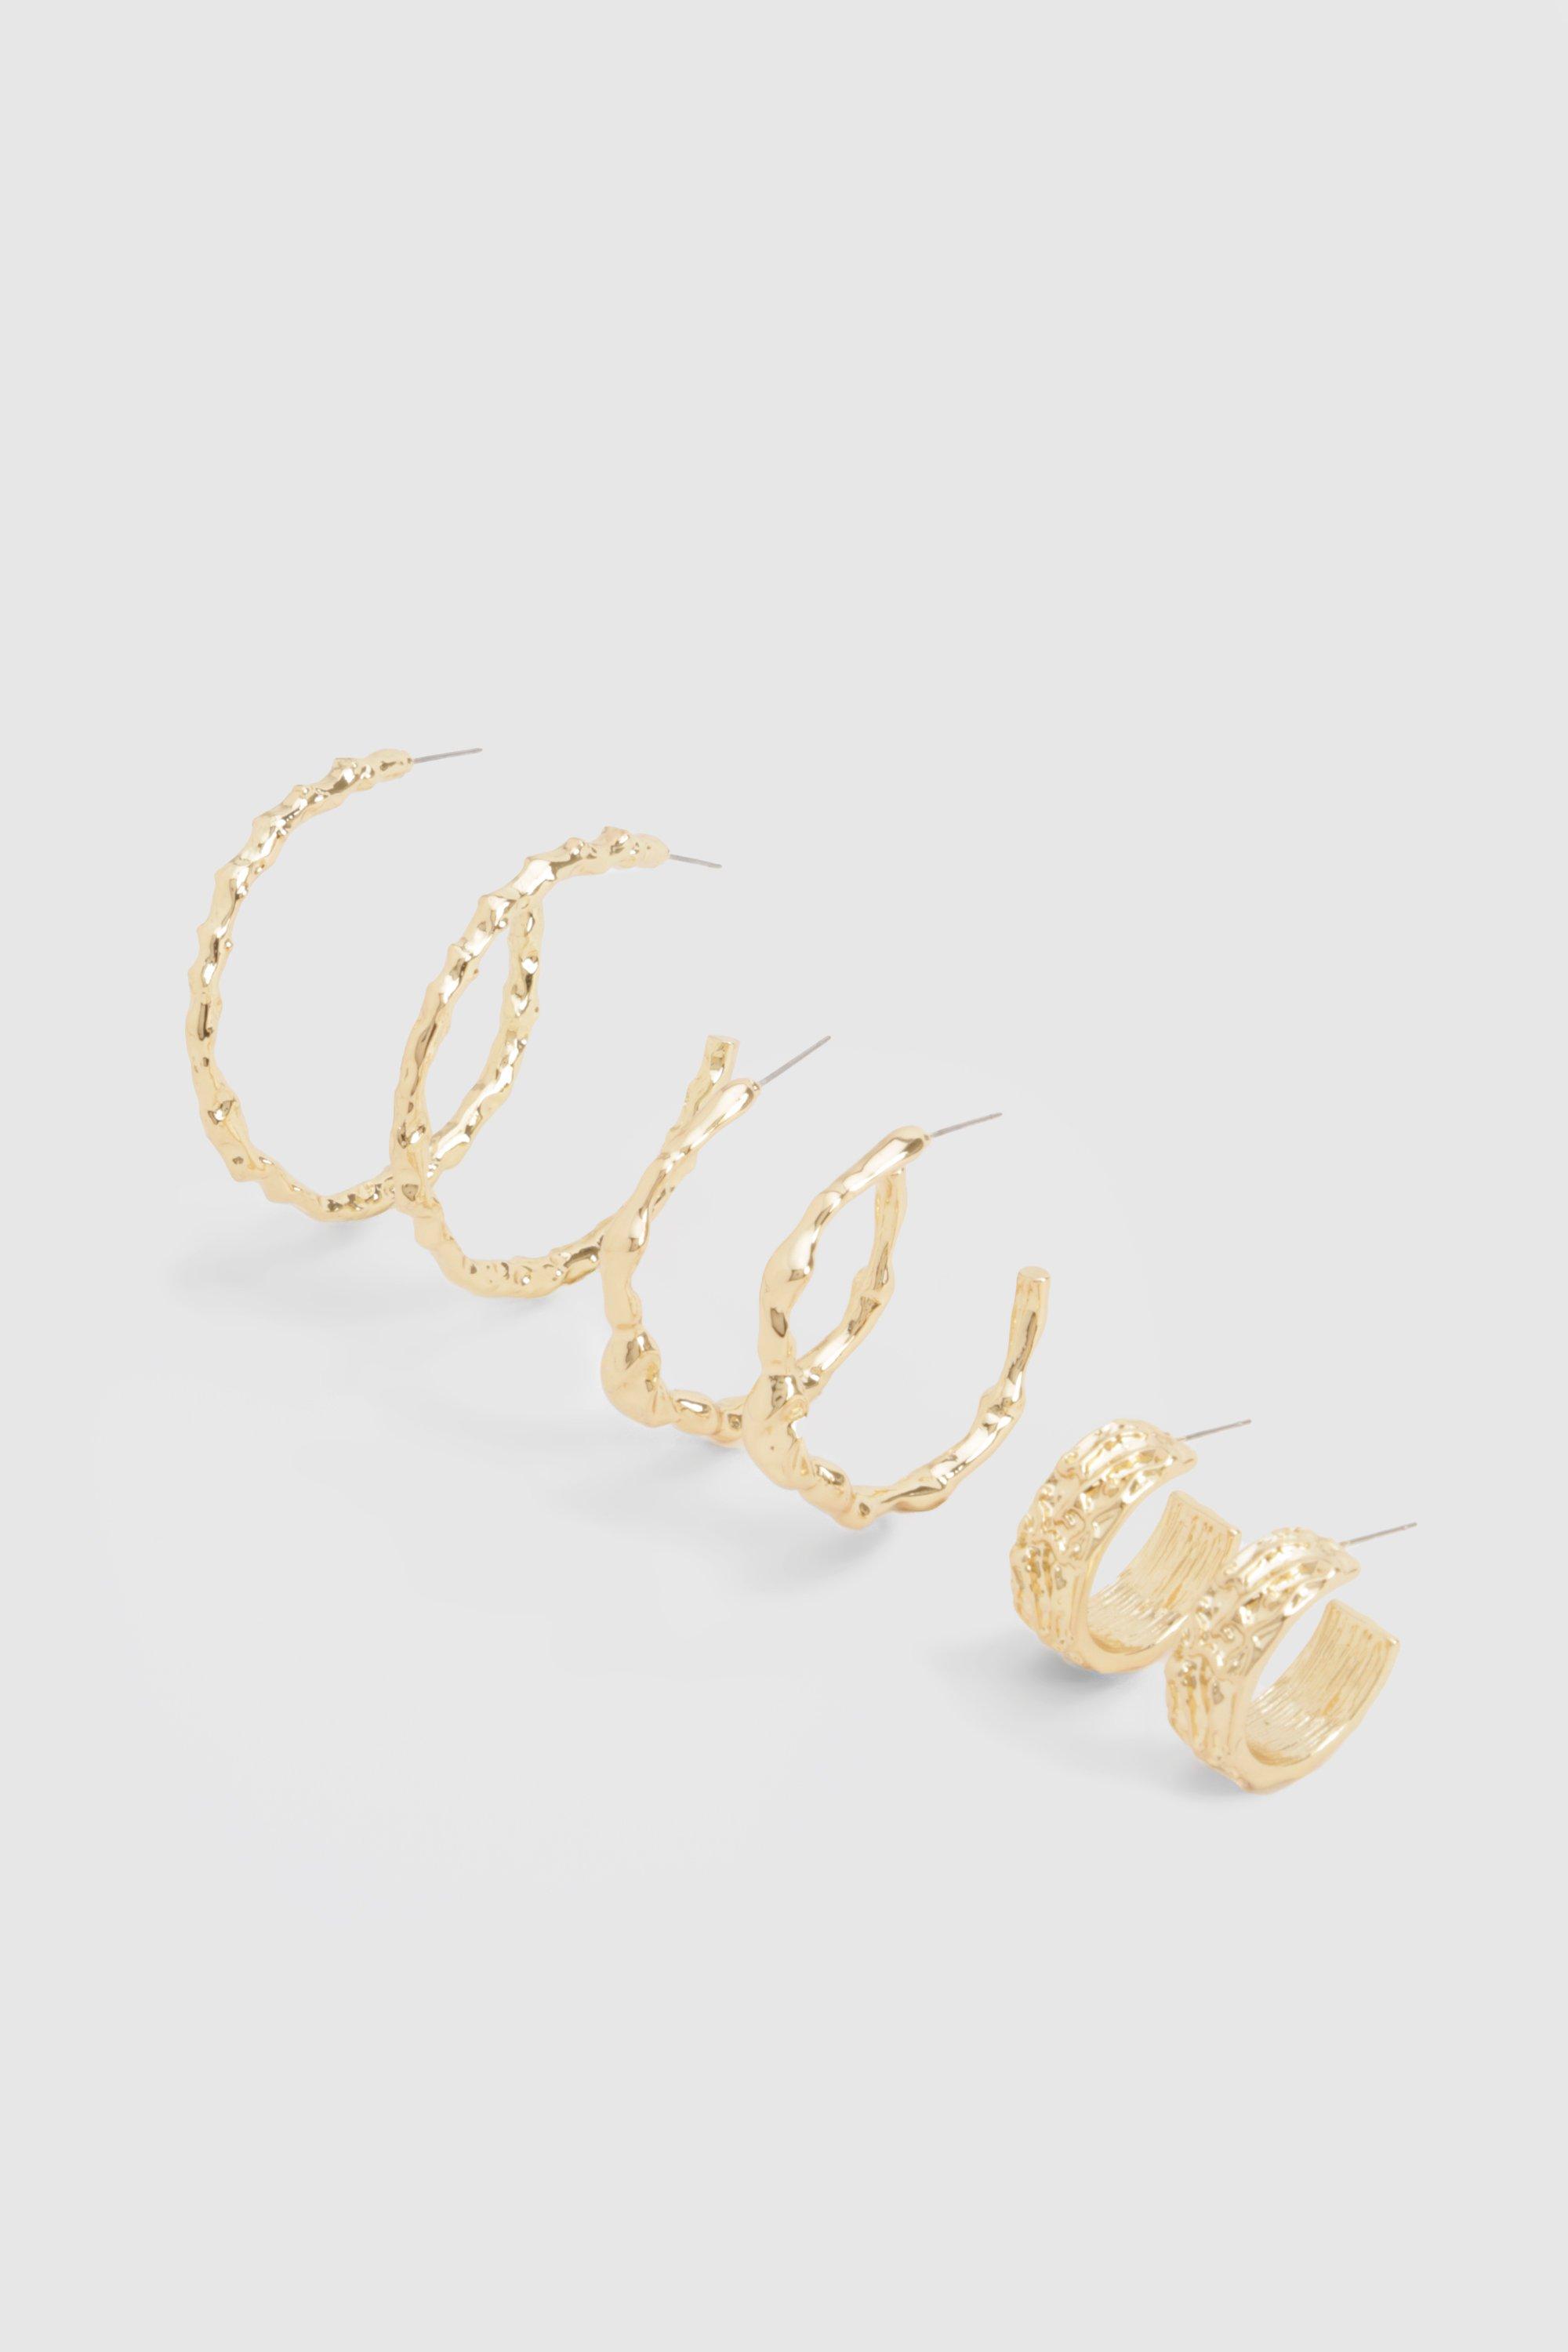 Image of Gold Hammered Hoop Earrings 3 Pack, Metallics